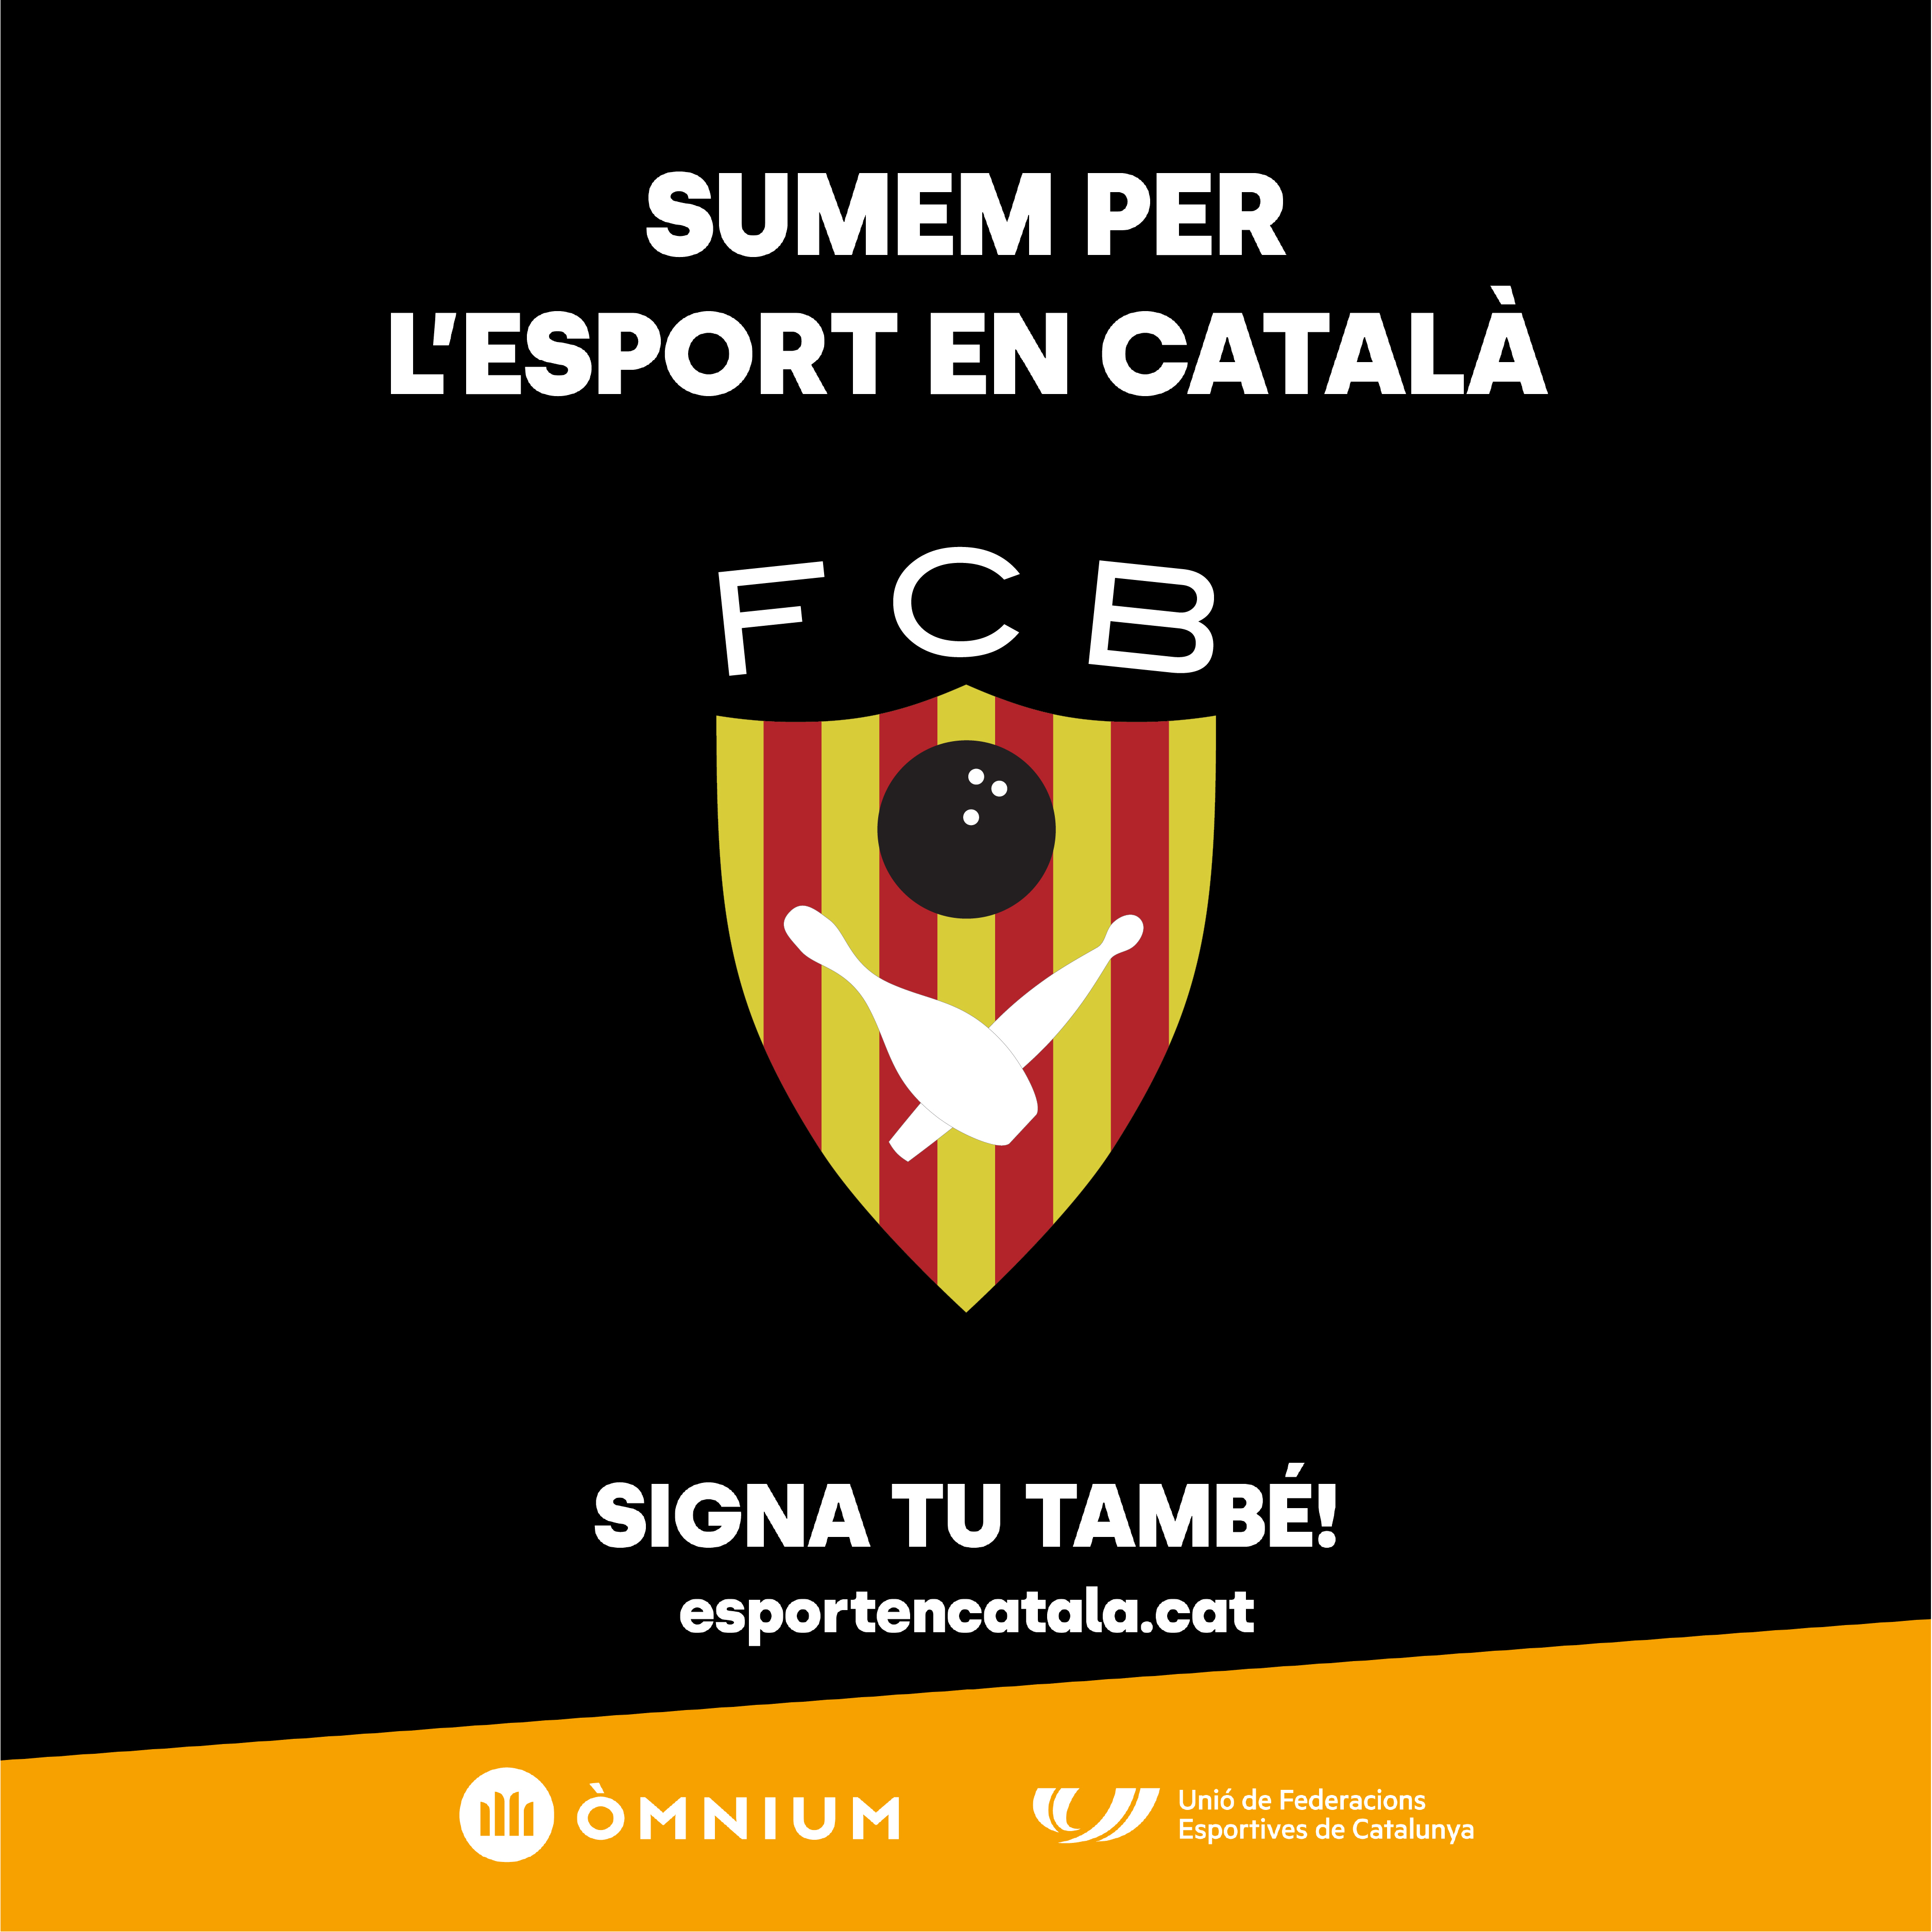 Sumem per l'esport català